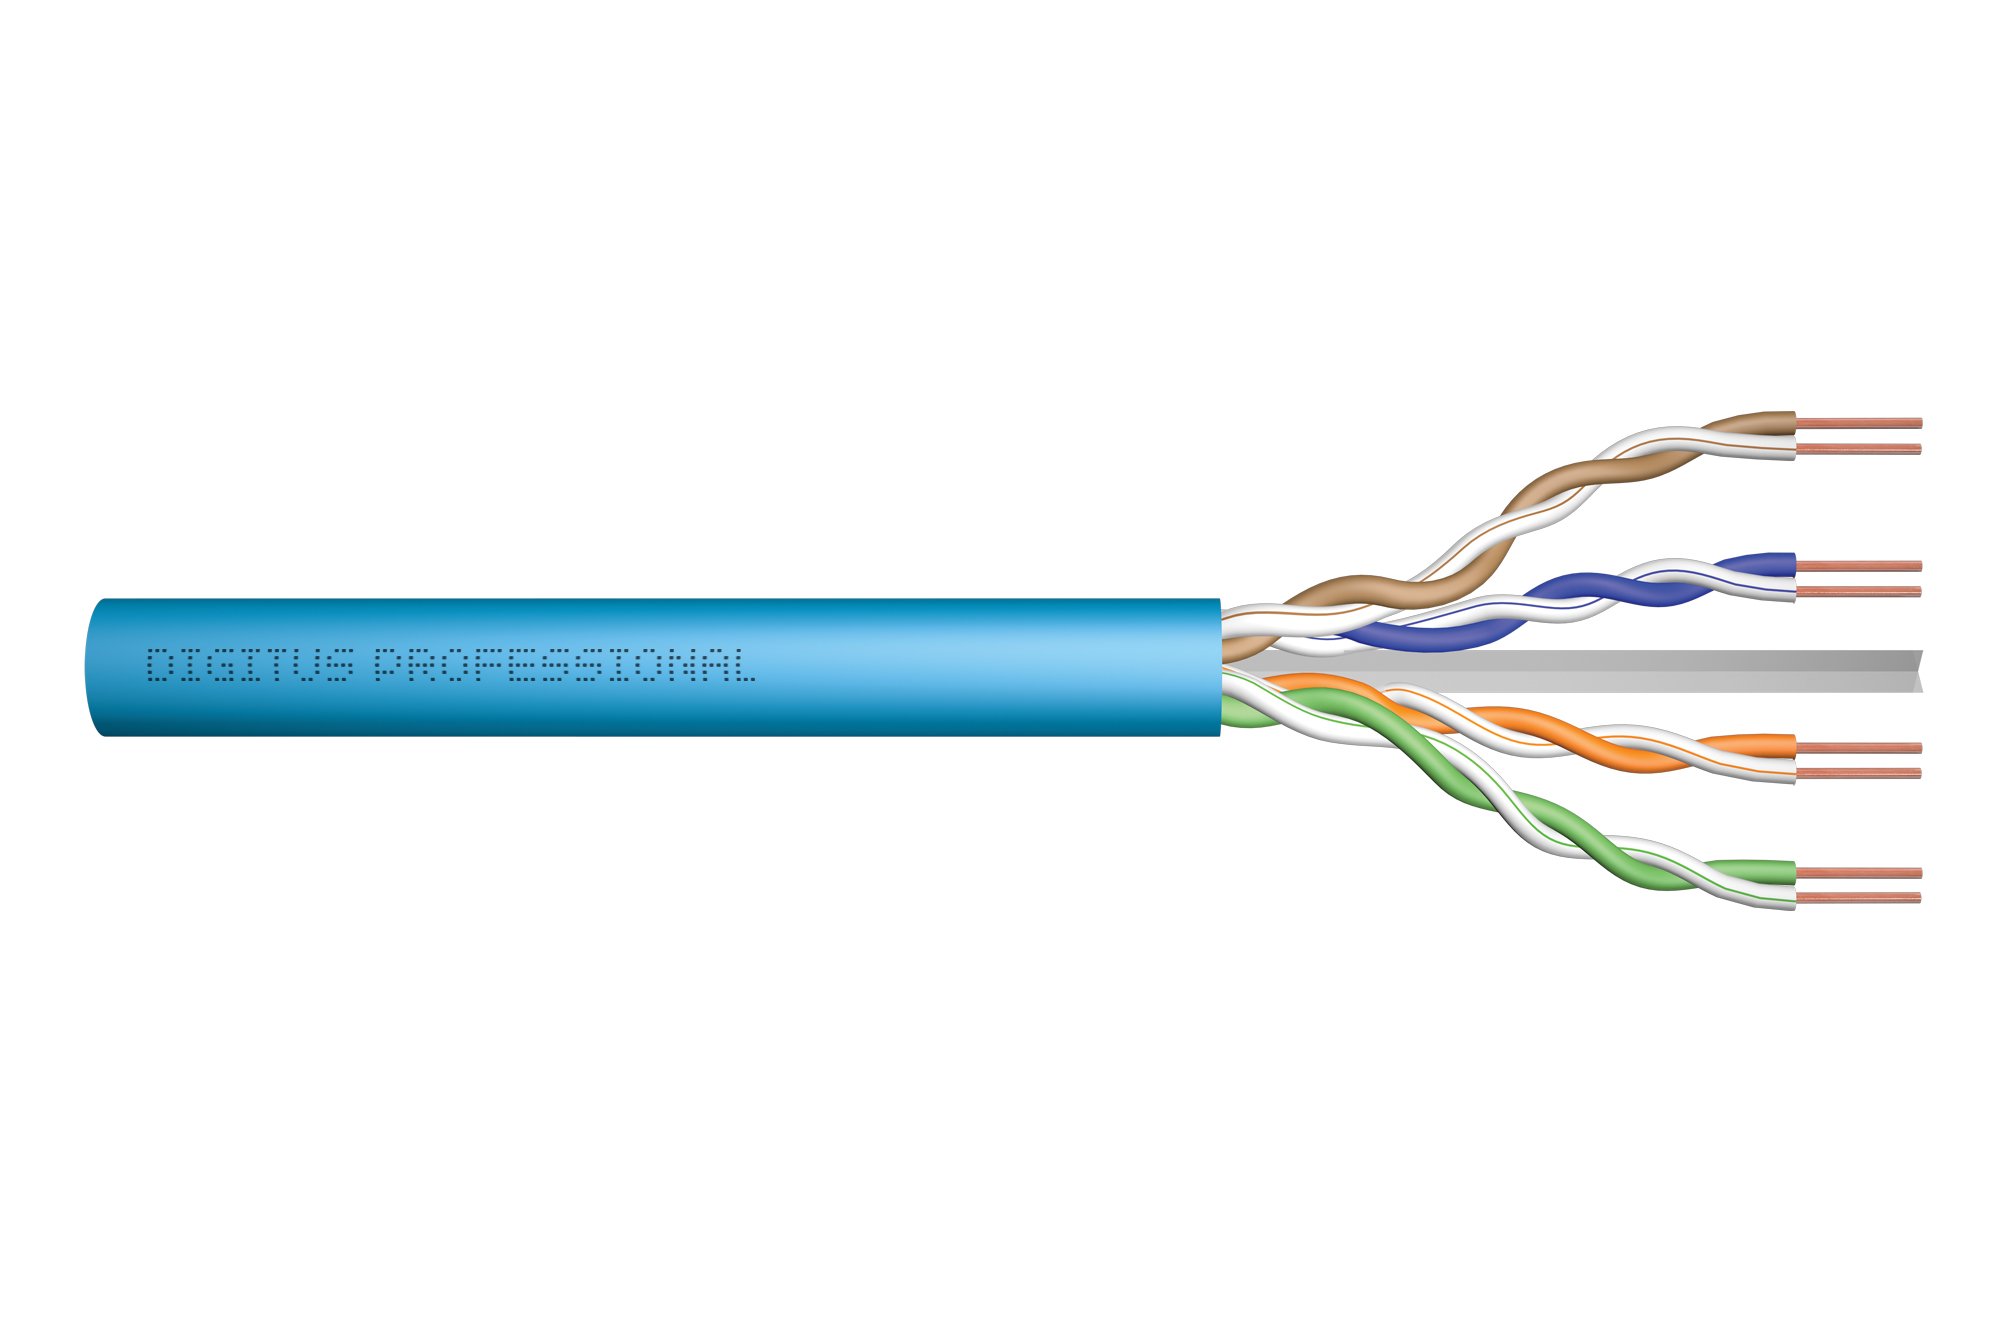 DIGITUS 305 m Cat 6A Netzwerkkabel - U-UTP Simplex - BauPVO Eca - LSZH Halogenfrei - 500 MHz Kupfer AWG 23/1 - PoE+ Kompatibel - LAN Kabel Verlegekabel Ethernet Kabel - Blau